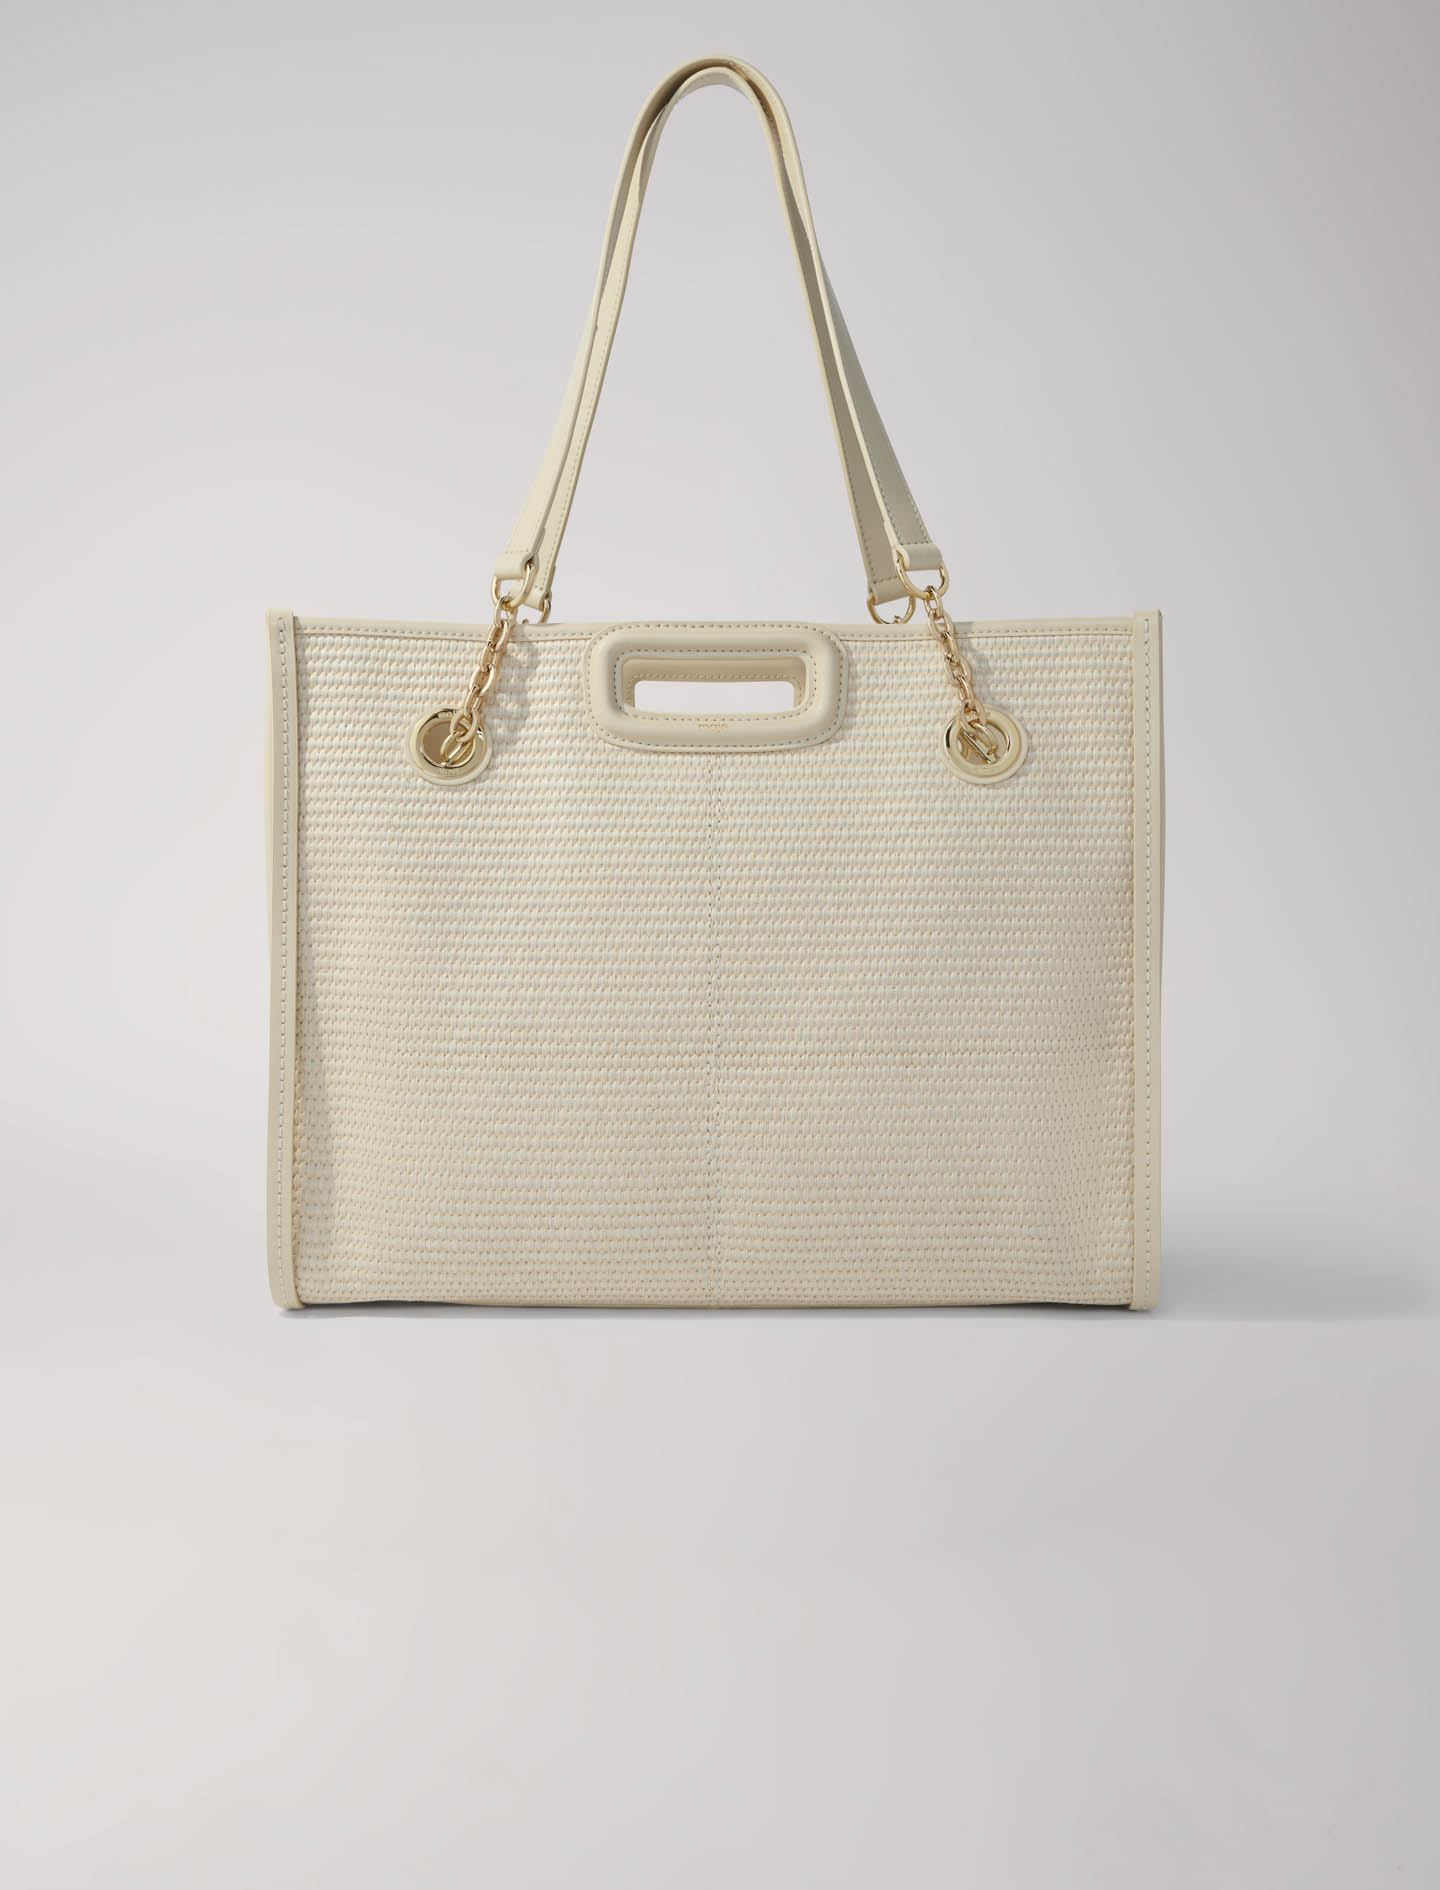 Maje Woman's polypropylene, Raffia-effect textile tote bag for Spring/Summer, in color Beige / Beige